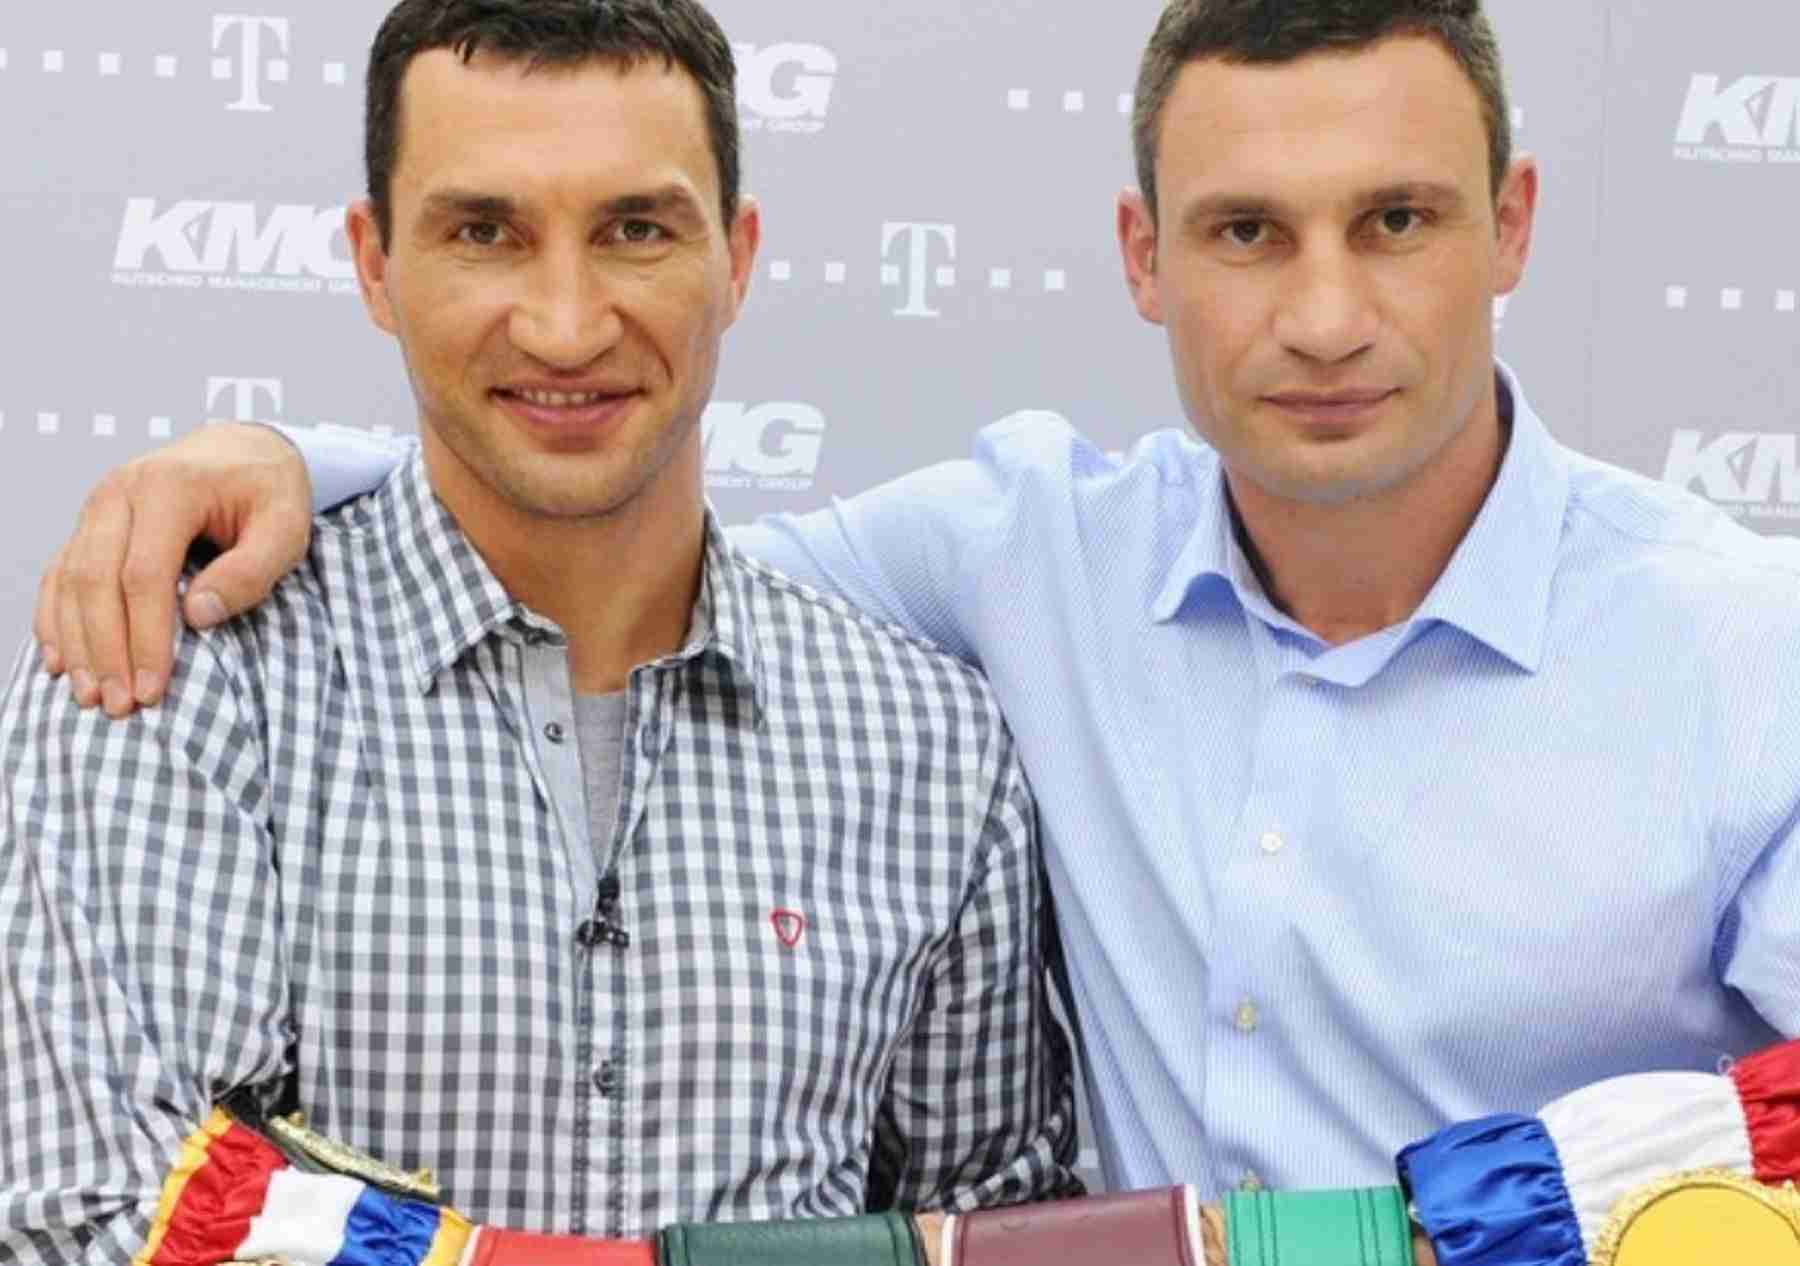 Klitschko Brothers Respond To War